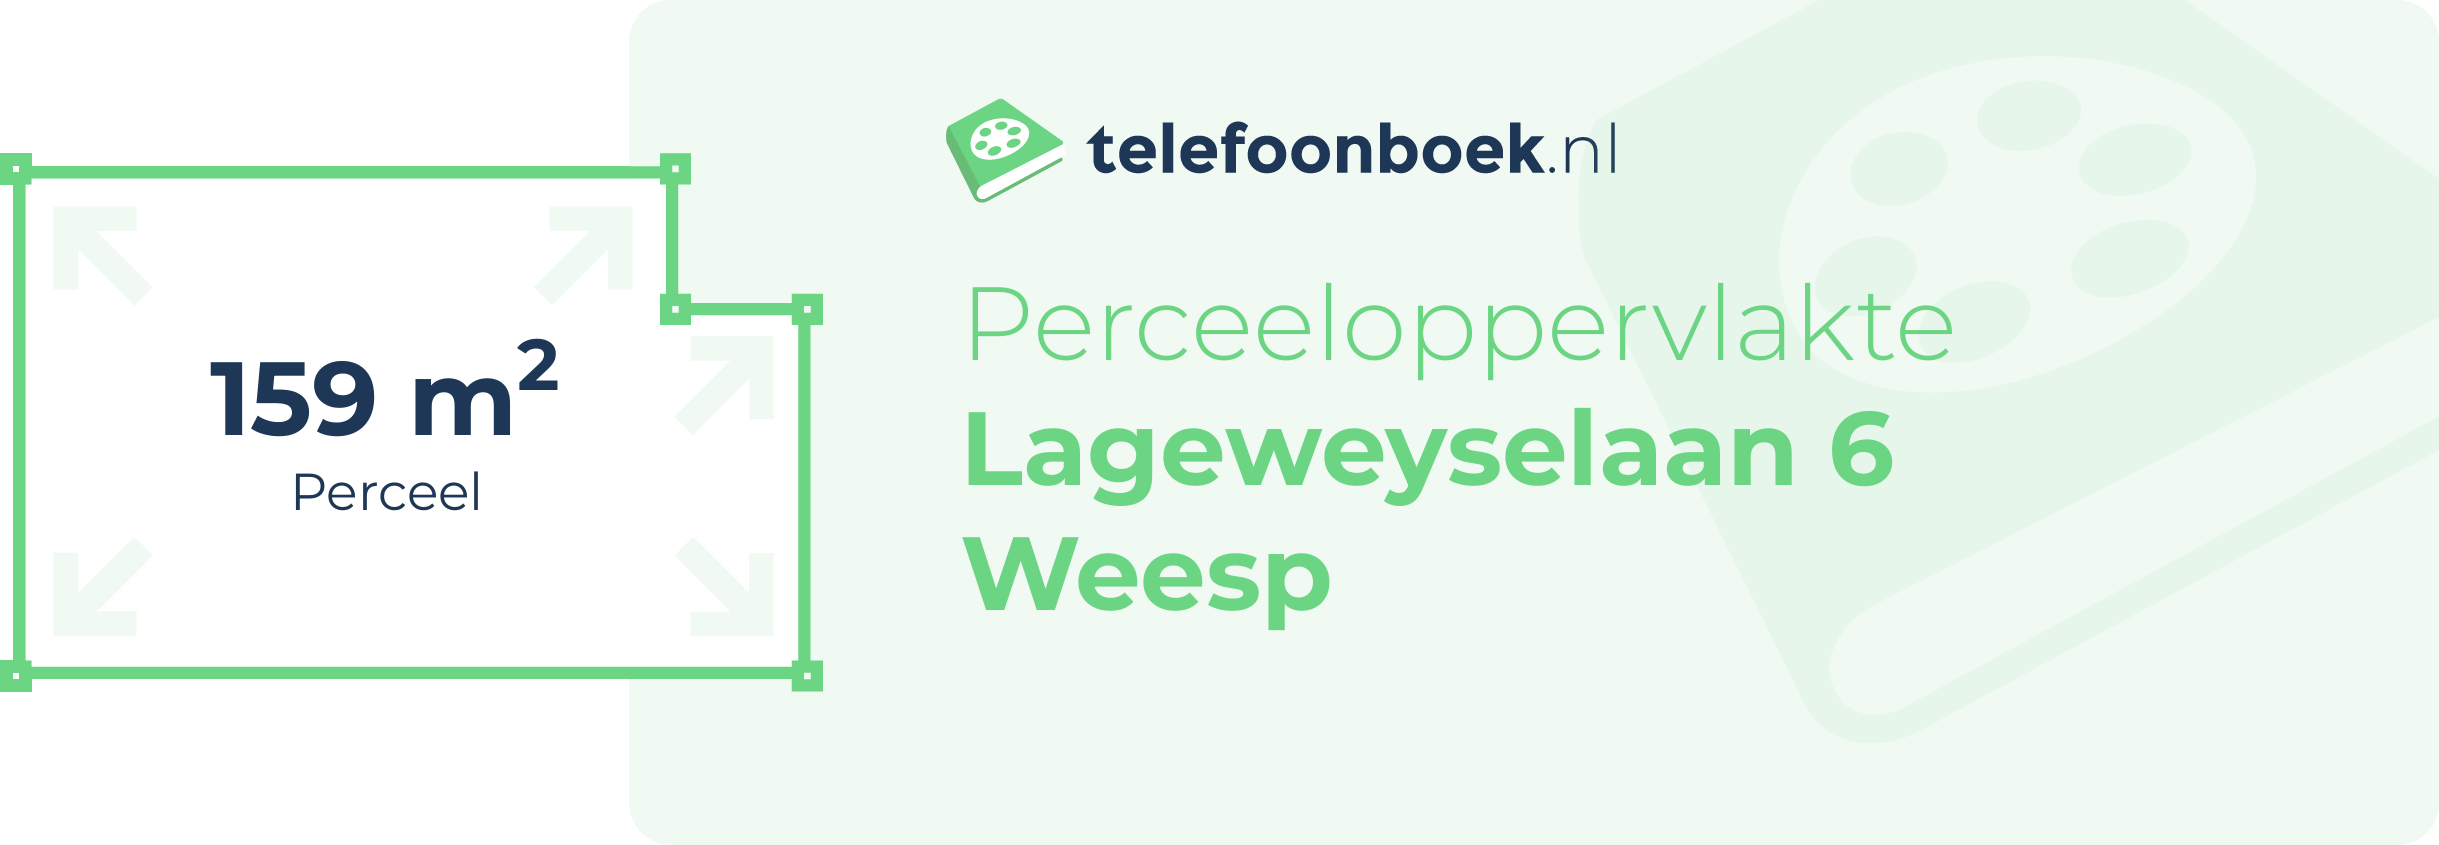 Perceeloppervlakte Lageweyselaan 6 Weesp